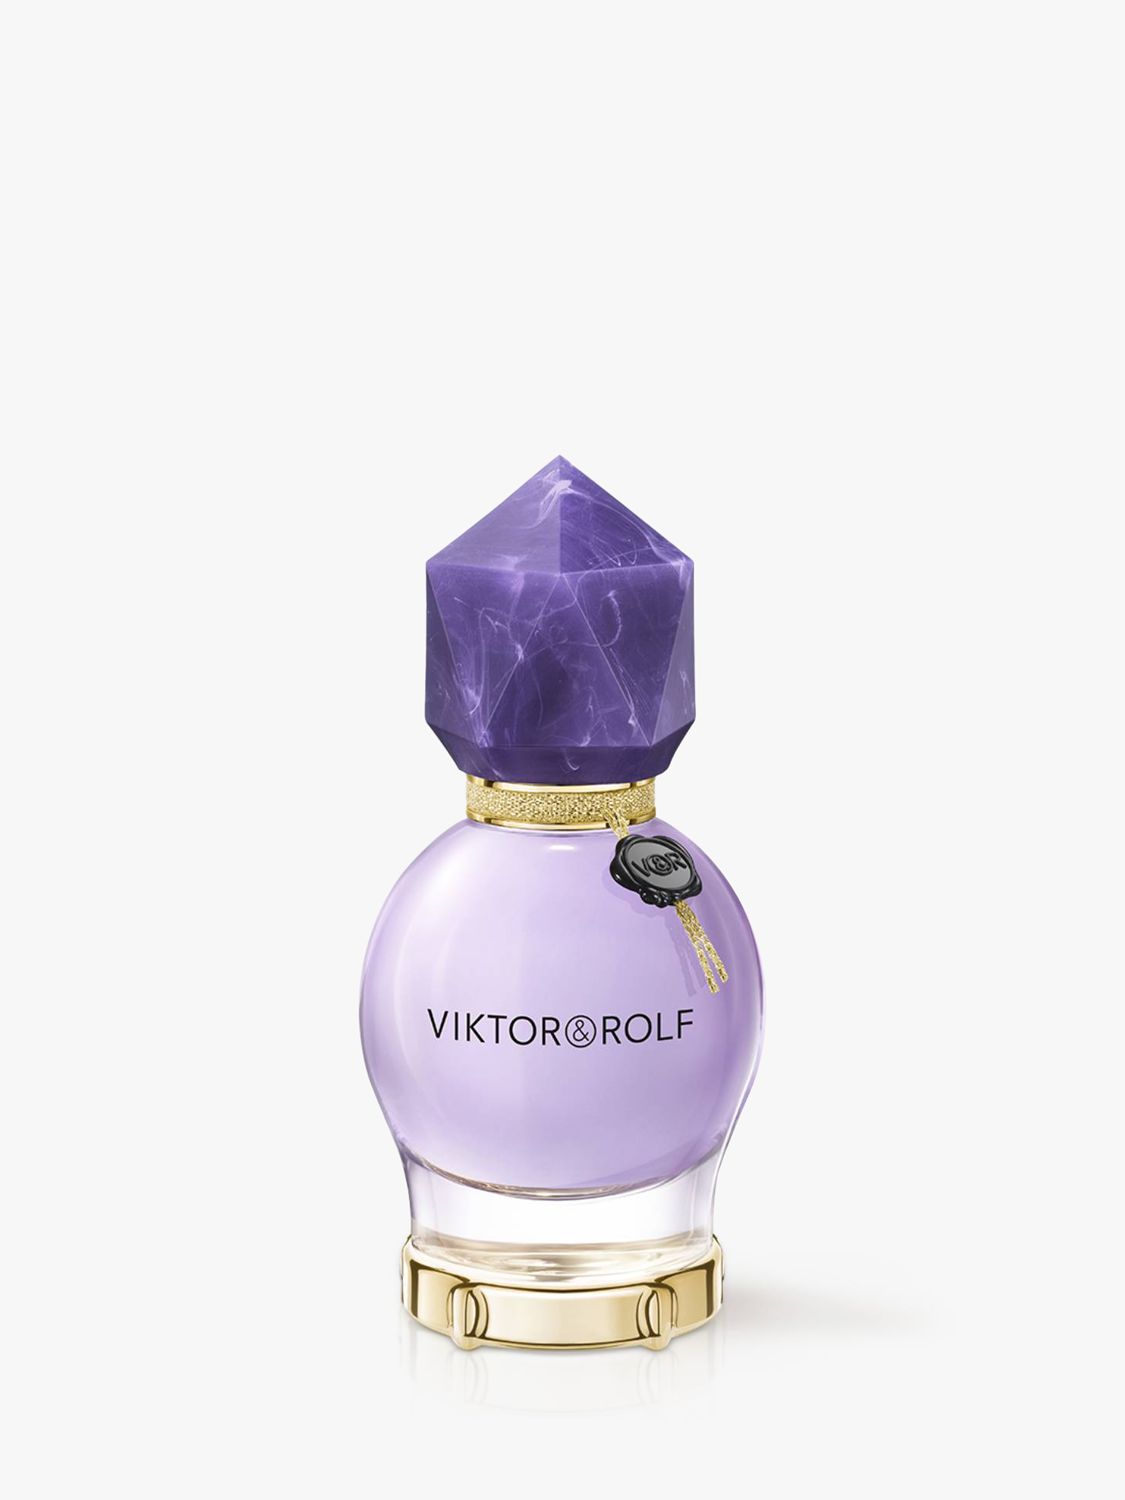 konstant Stræbe Så mange Viktor & Rolf Perfume | John Lewis & Partners